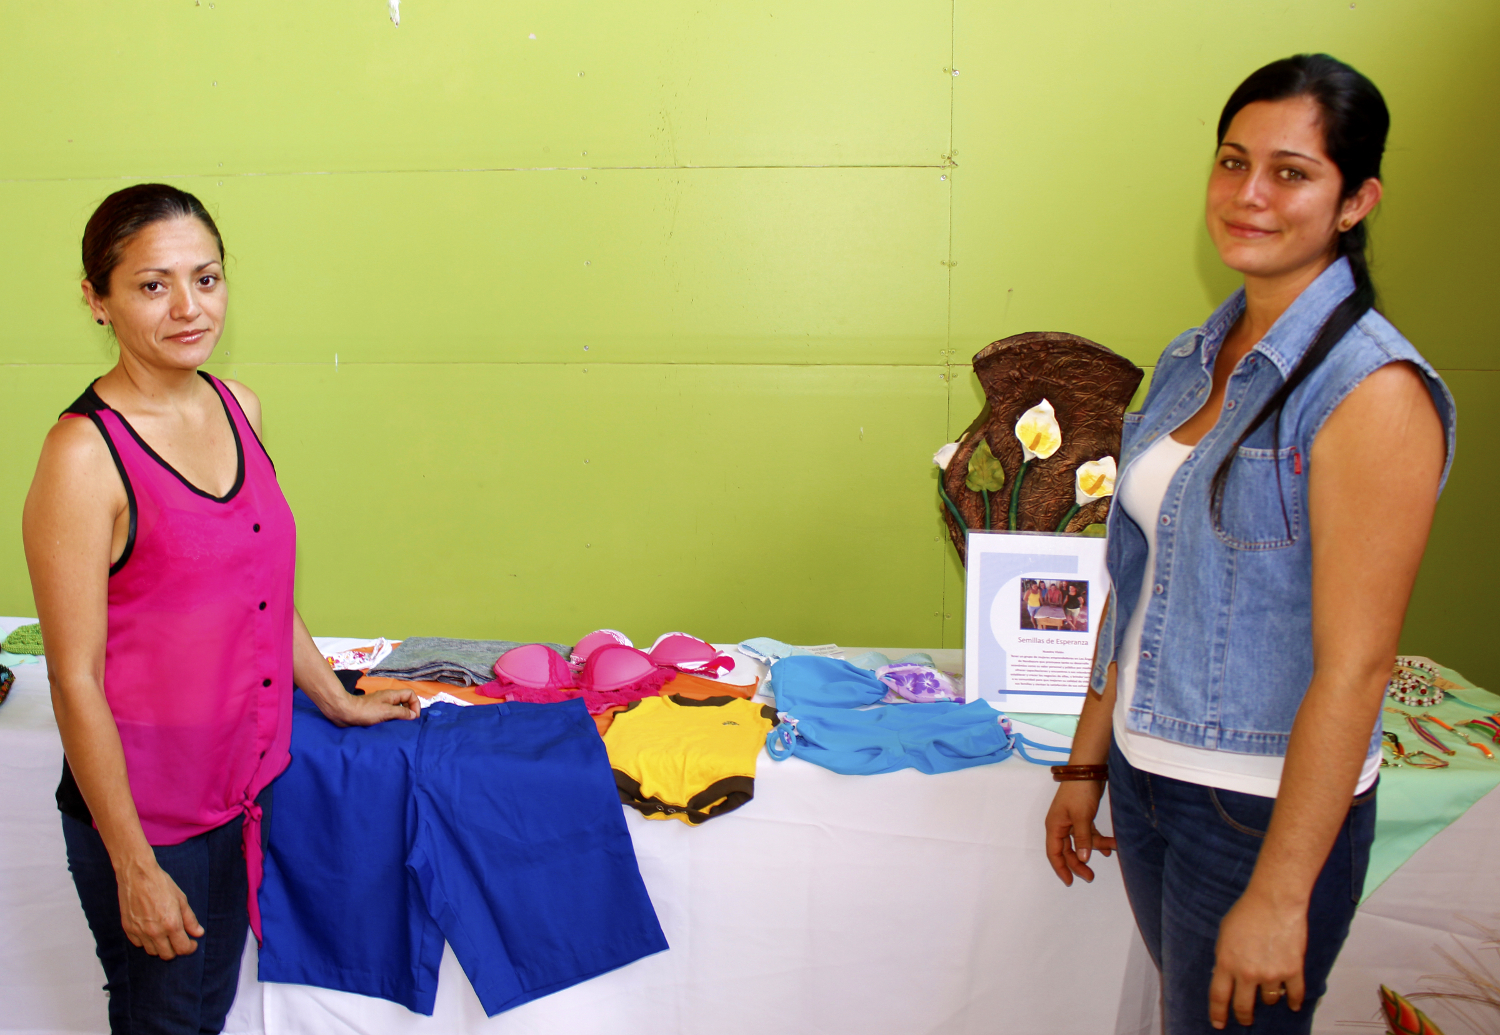 Mujeres de Guanacaste participaron del proceso de capacitaciones para fortalecer sus iniciativas productivas locales.  Foto cortesía TC-592.